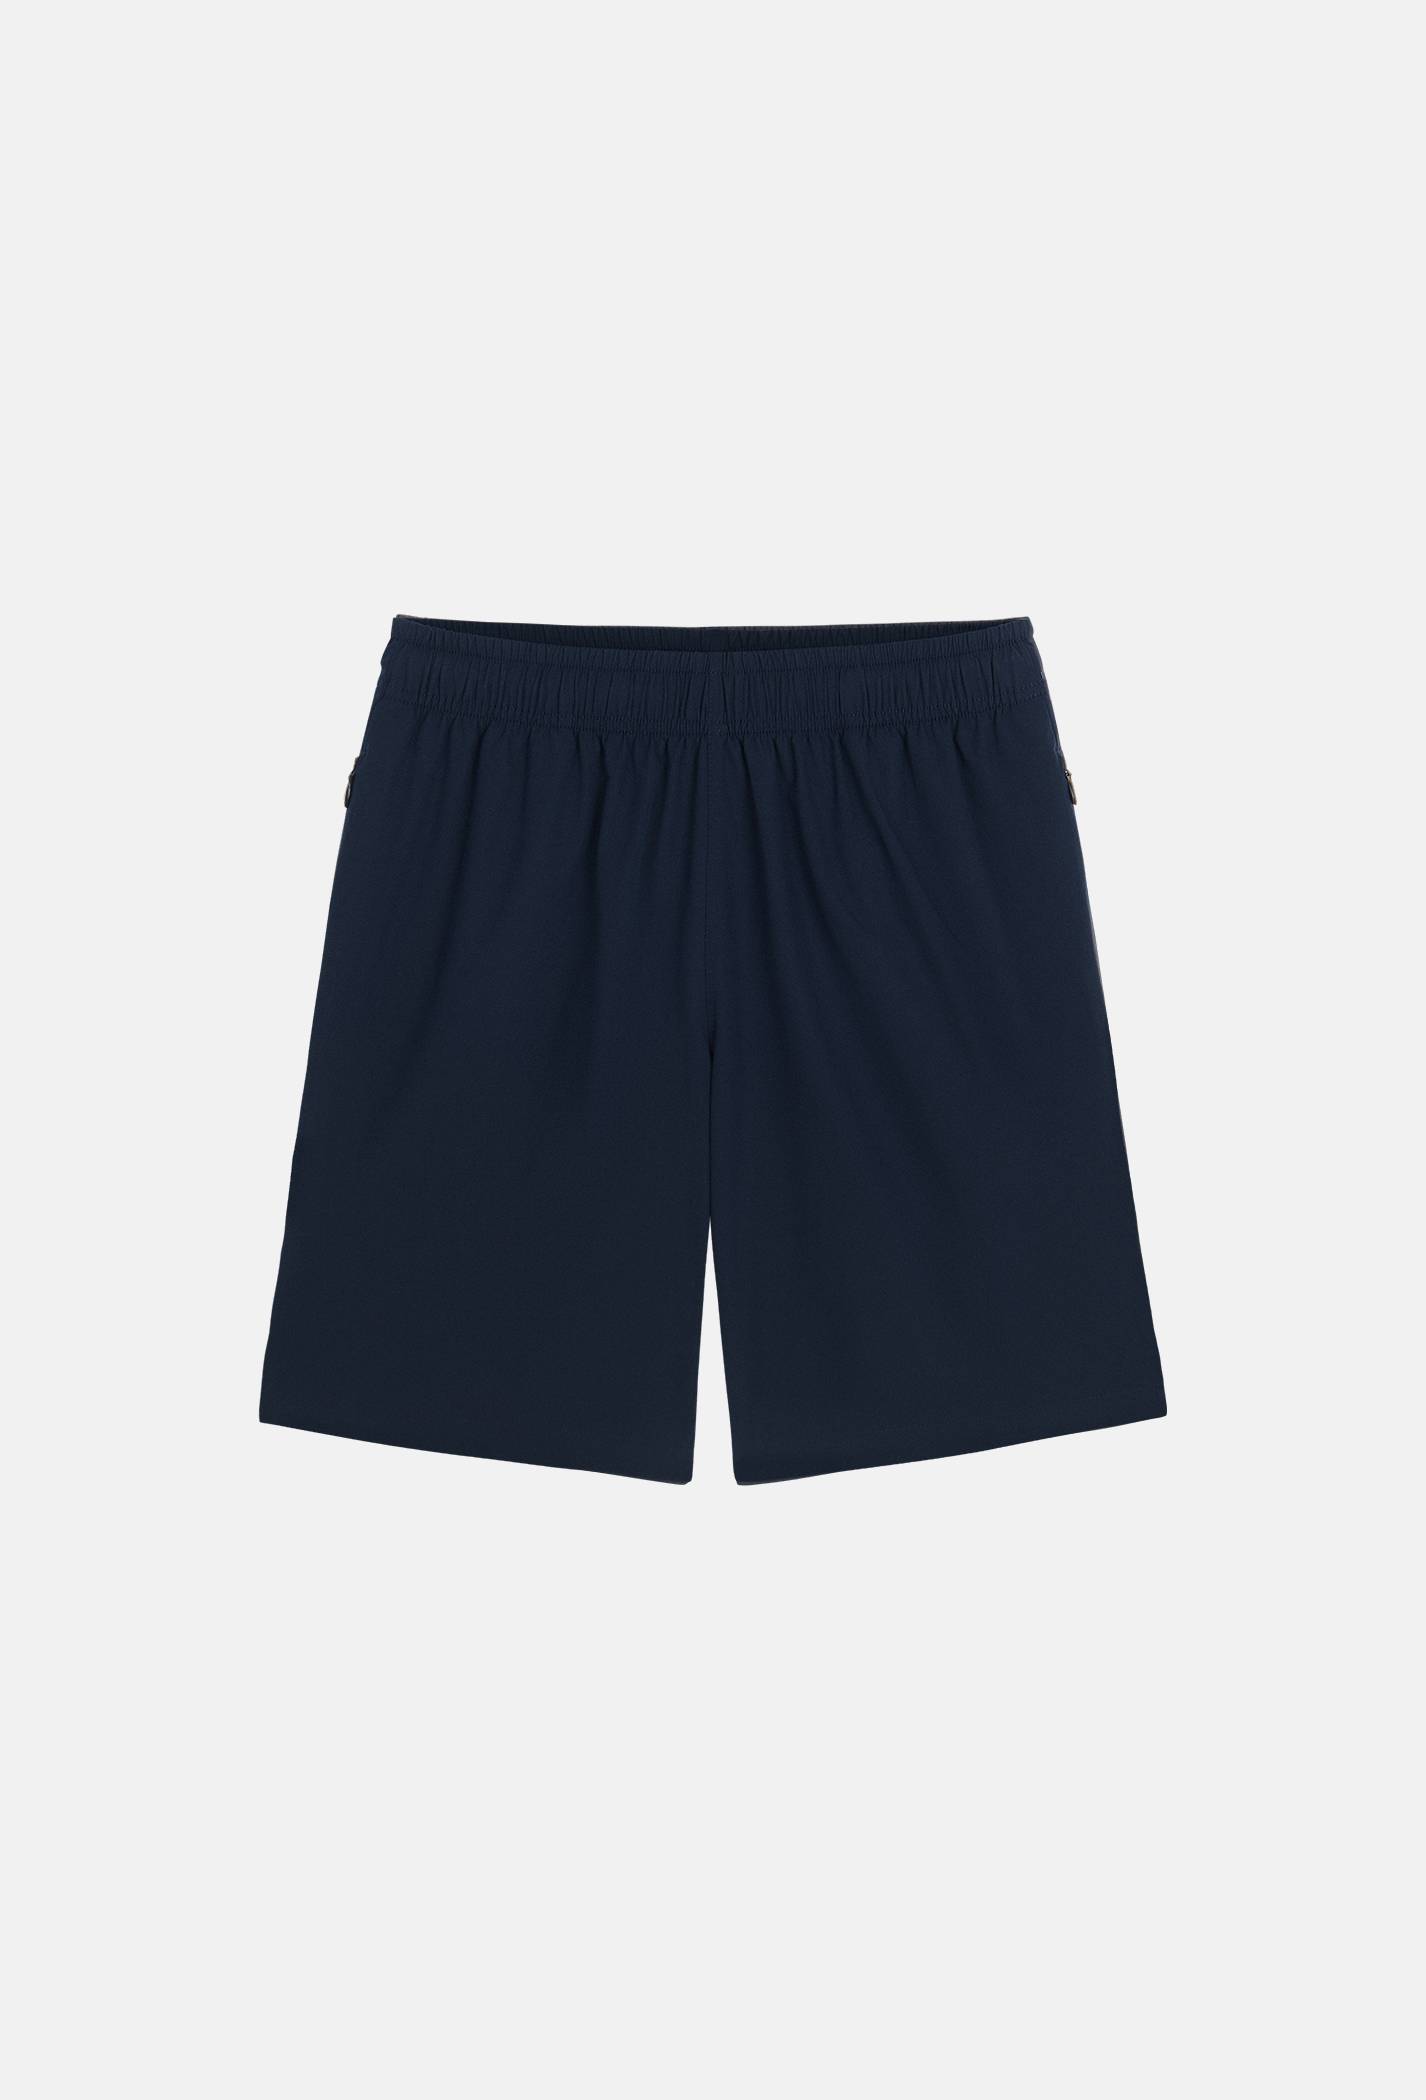 Quần nam Daily Shorts - sợi Sorona, nhuộm Cleandye xanh-navy 1